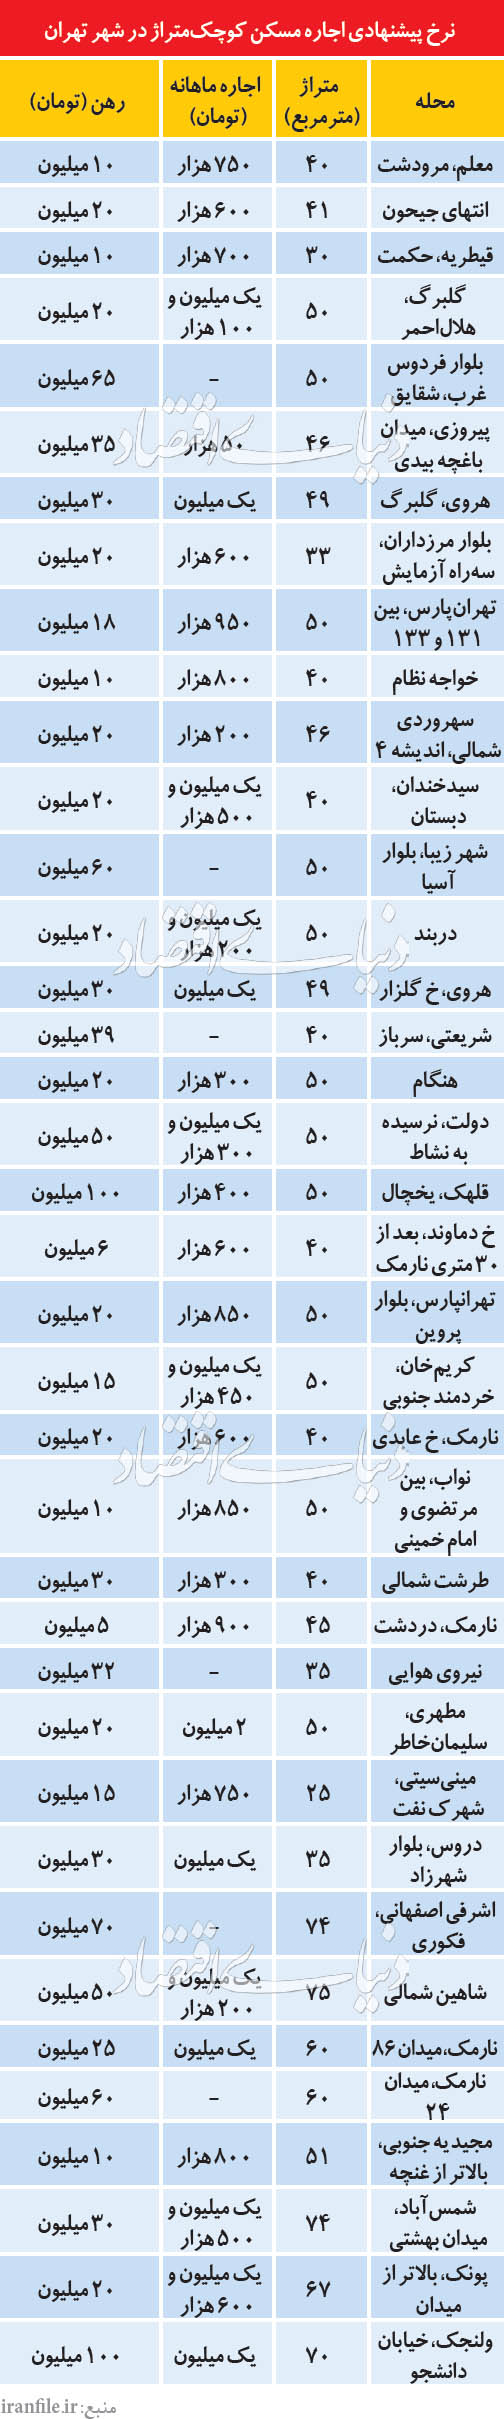 قیمت آپارتمان های نقلی تهران +جدول